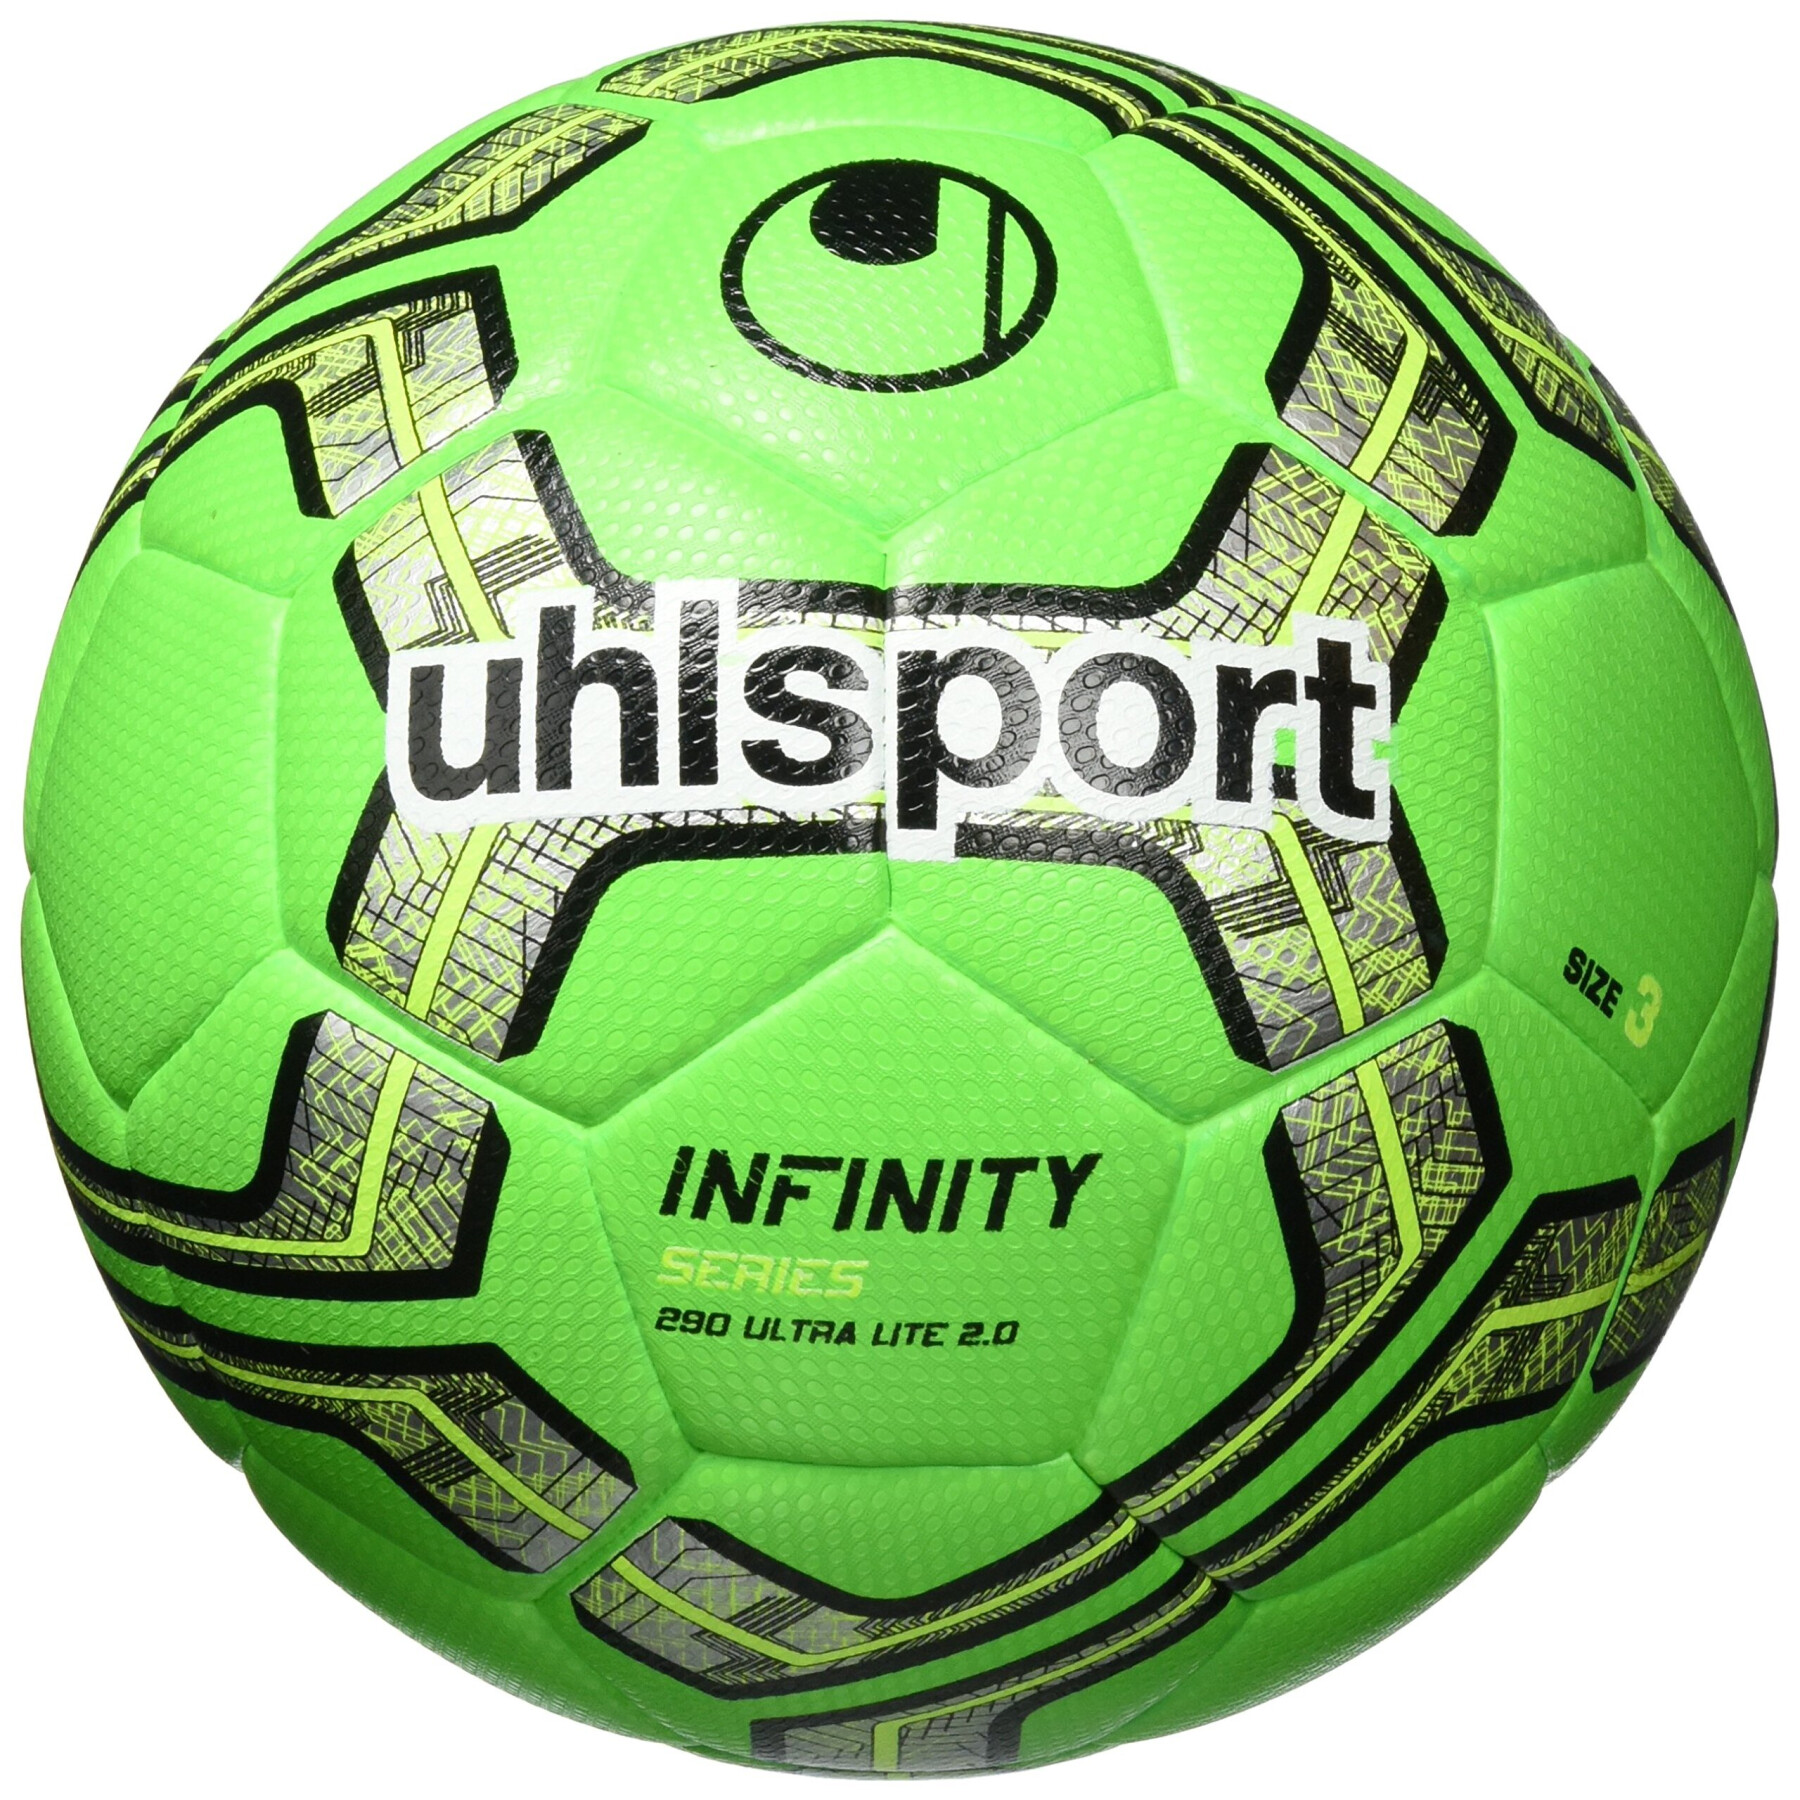 Globo Uhlsport Infinity 290 Ultralite 2.0